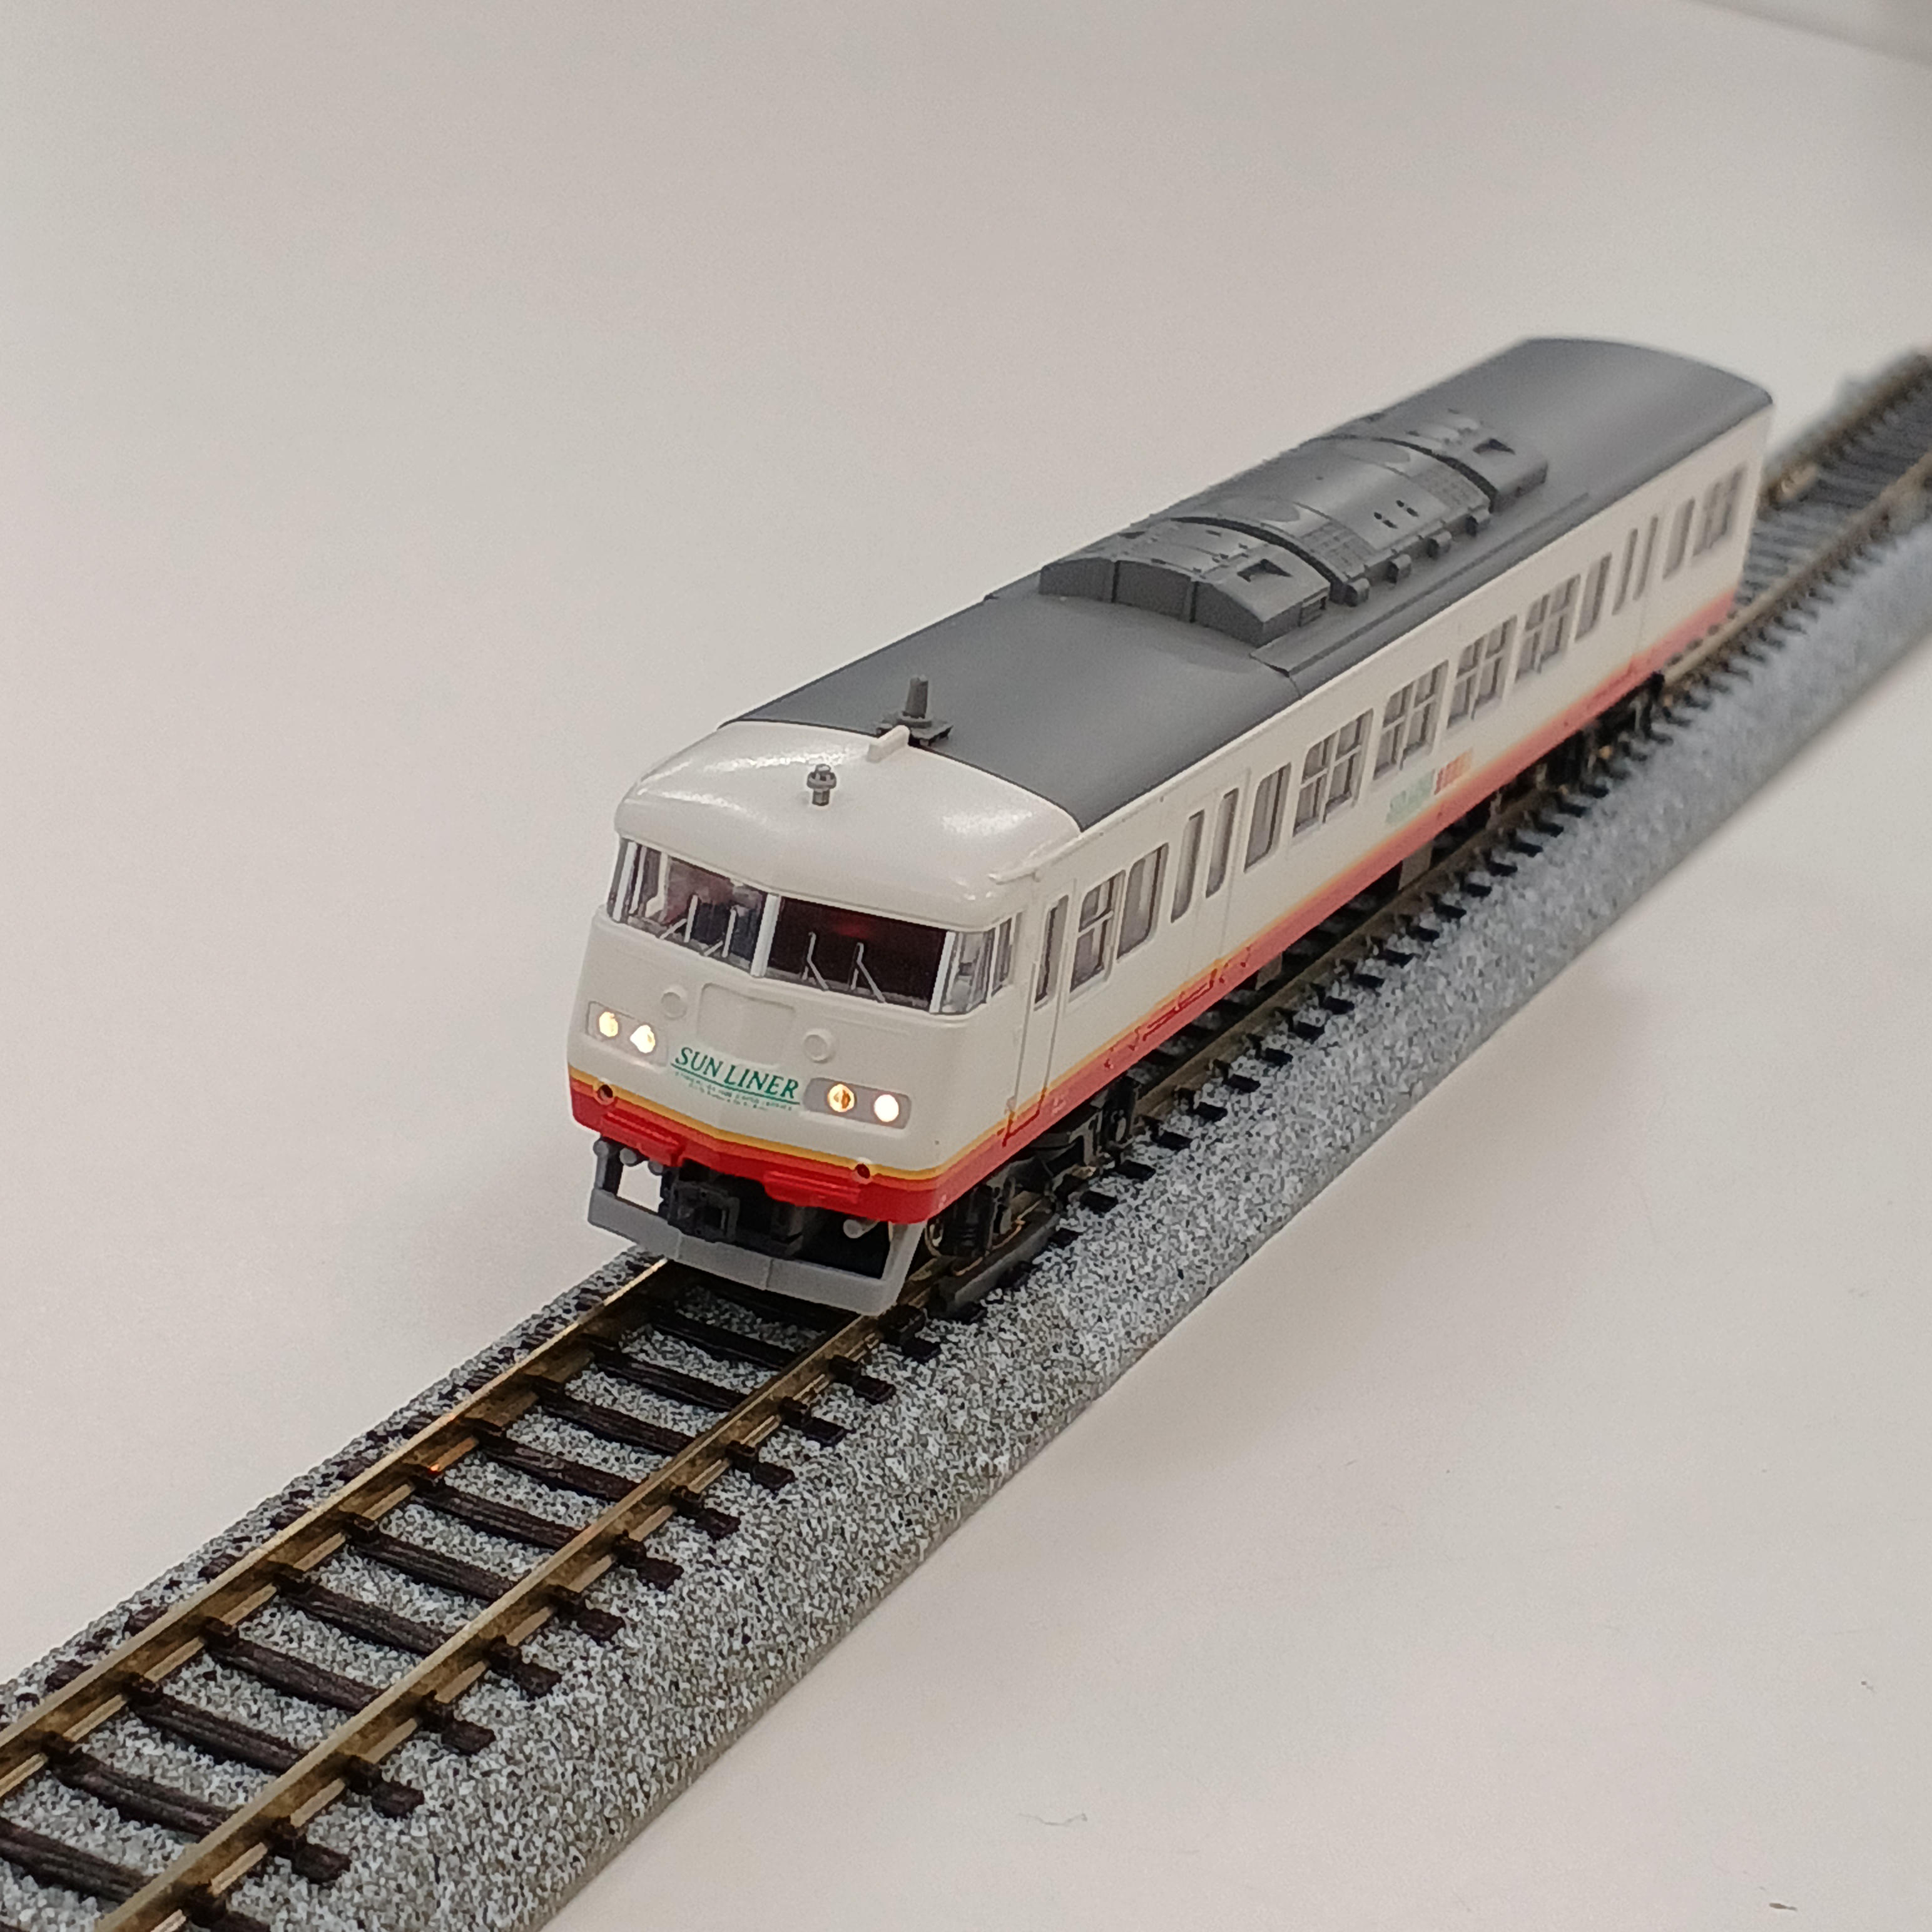 KATO Nゲージ 10-329 117系 直流近郊形電車 Sunライナー - 鉄道模型